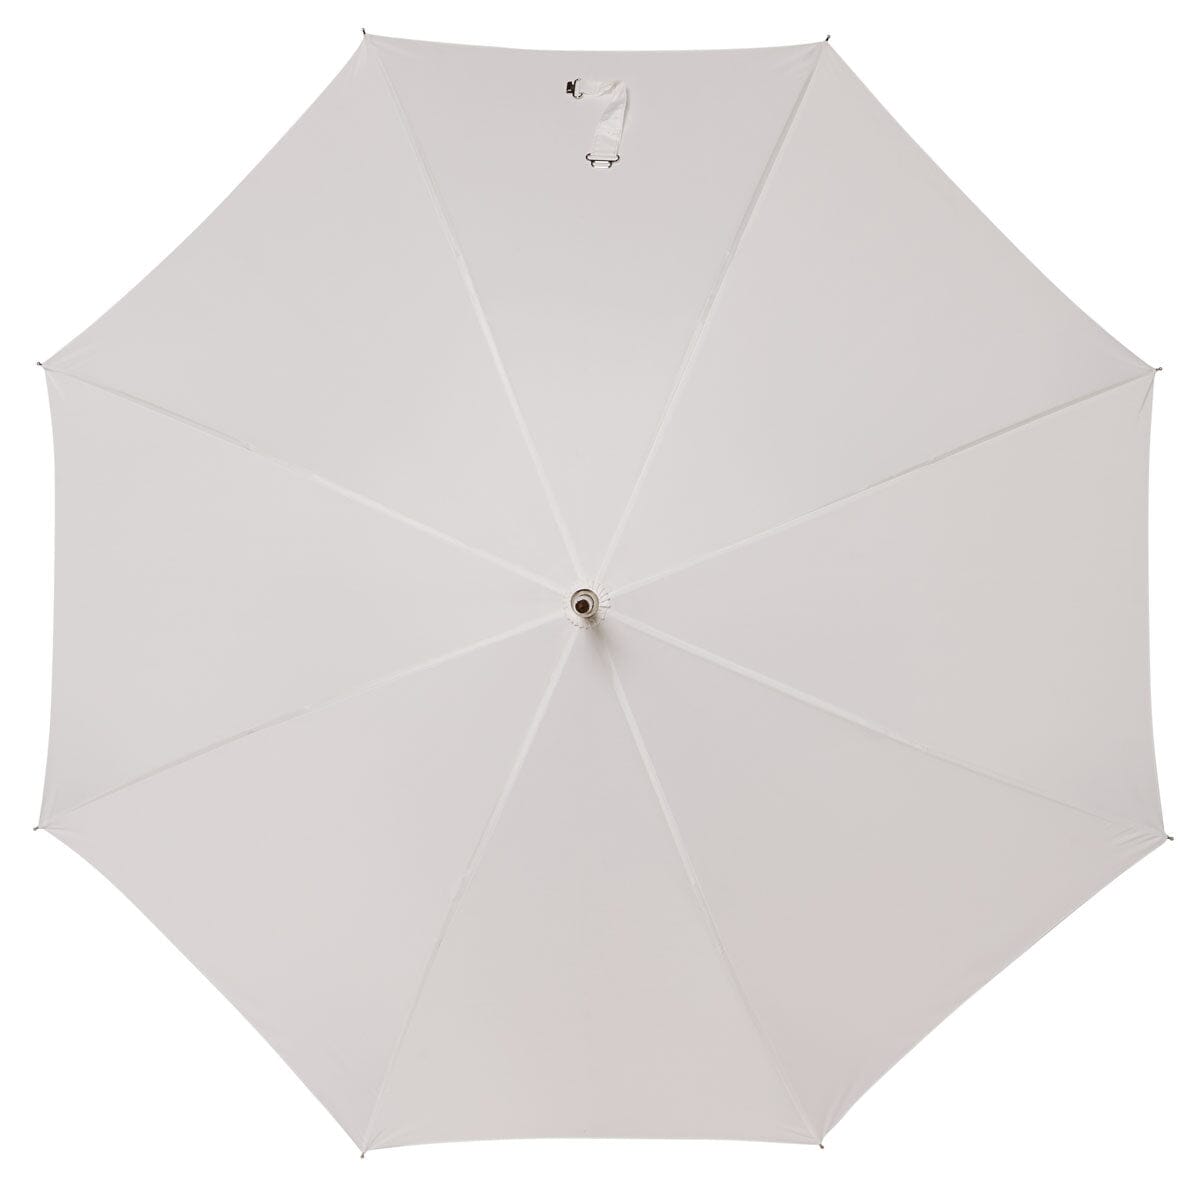 The Rain Umbrella - Antique White